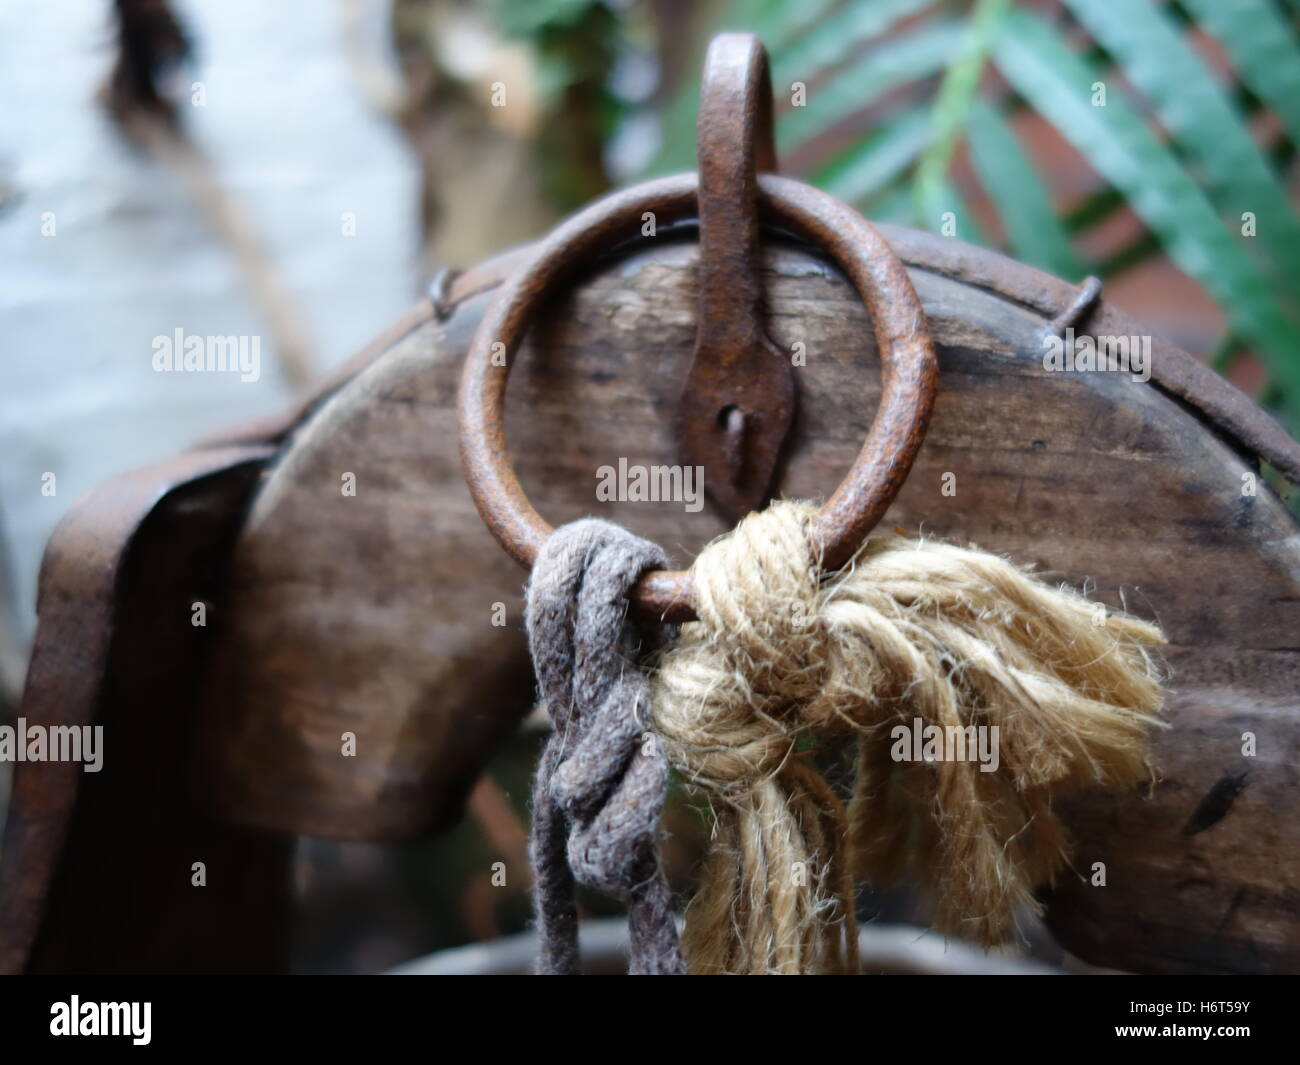 Noeuds et d'un cerceau métallique fixé sur la partie supérieure d'un vieux seau en bois Banque D'Images